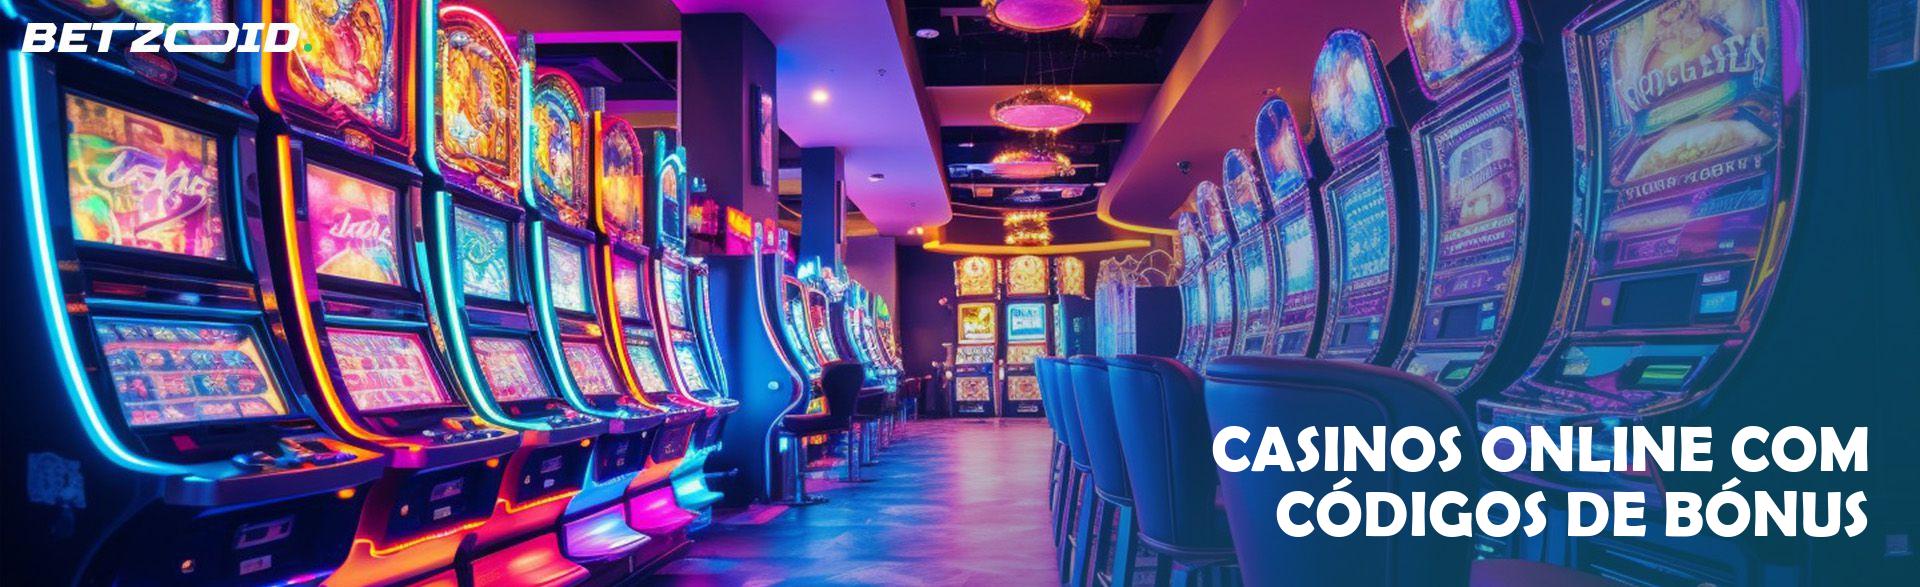 Casinos Online com Códigos de Bónus.